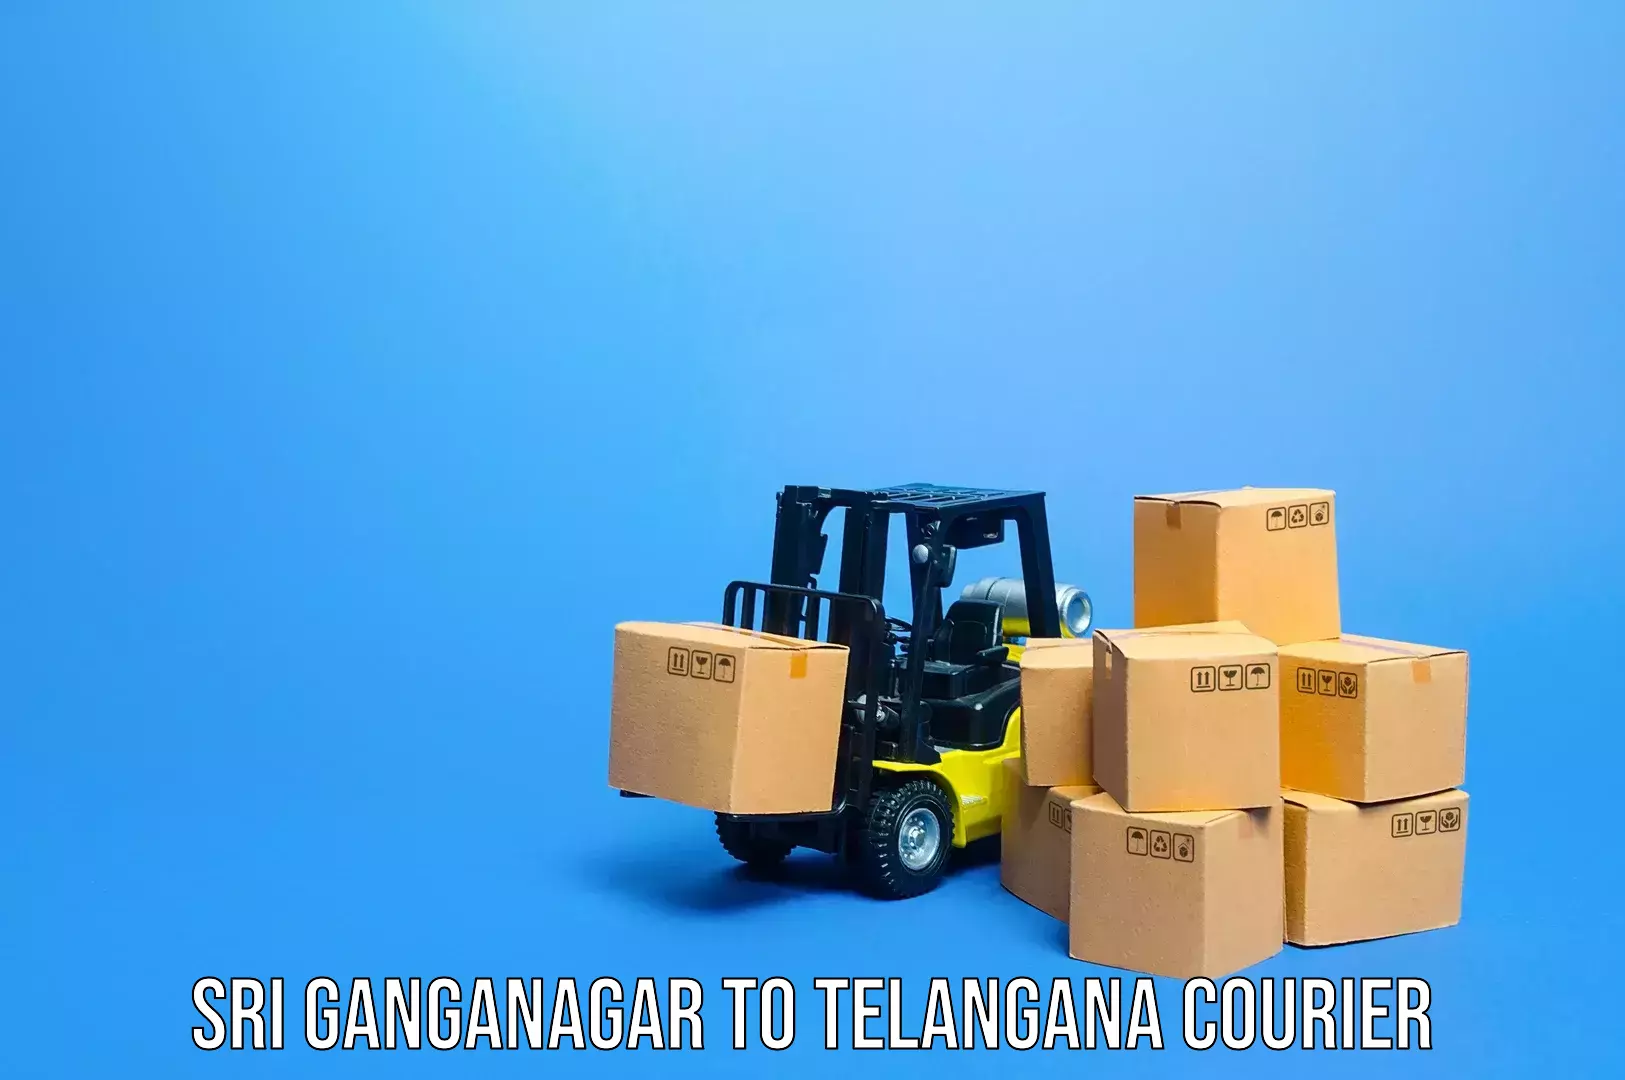 Baggage shipping rates calculator Sri Ganganagar to Alair